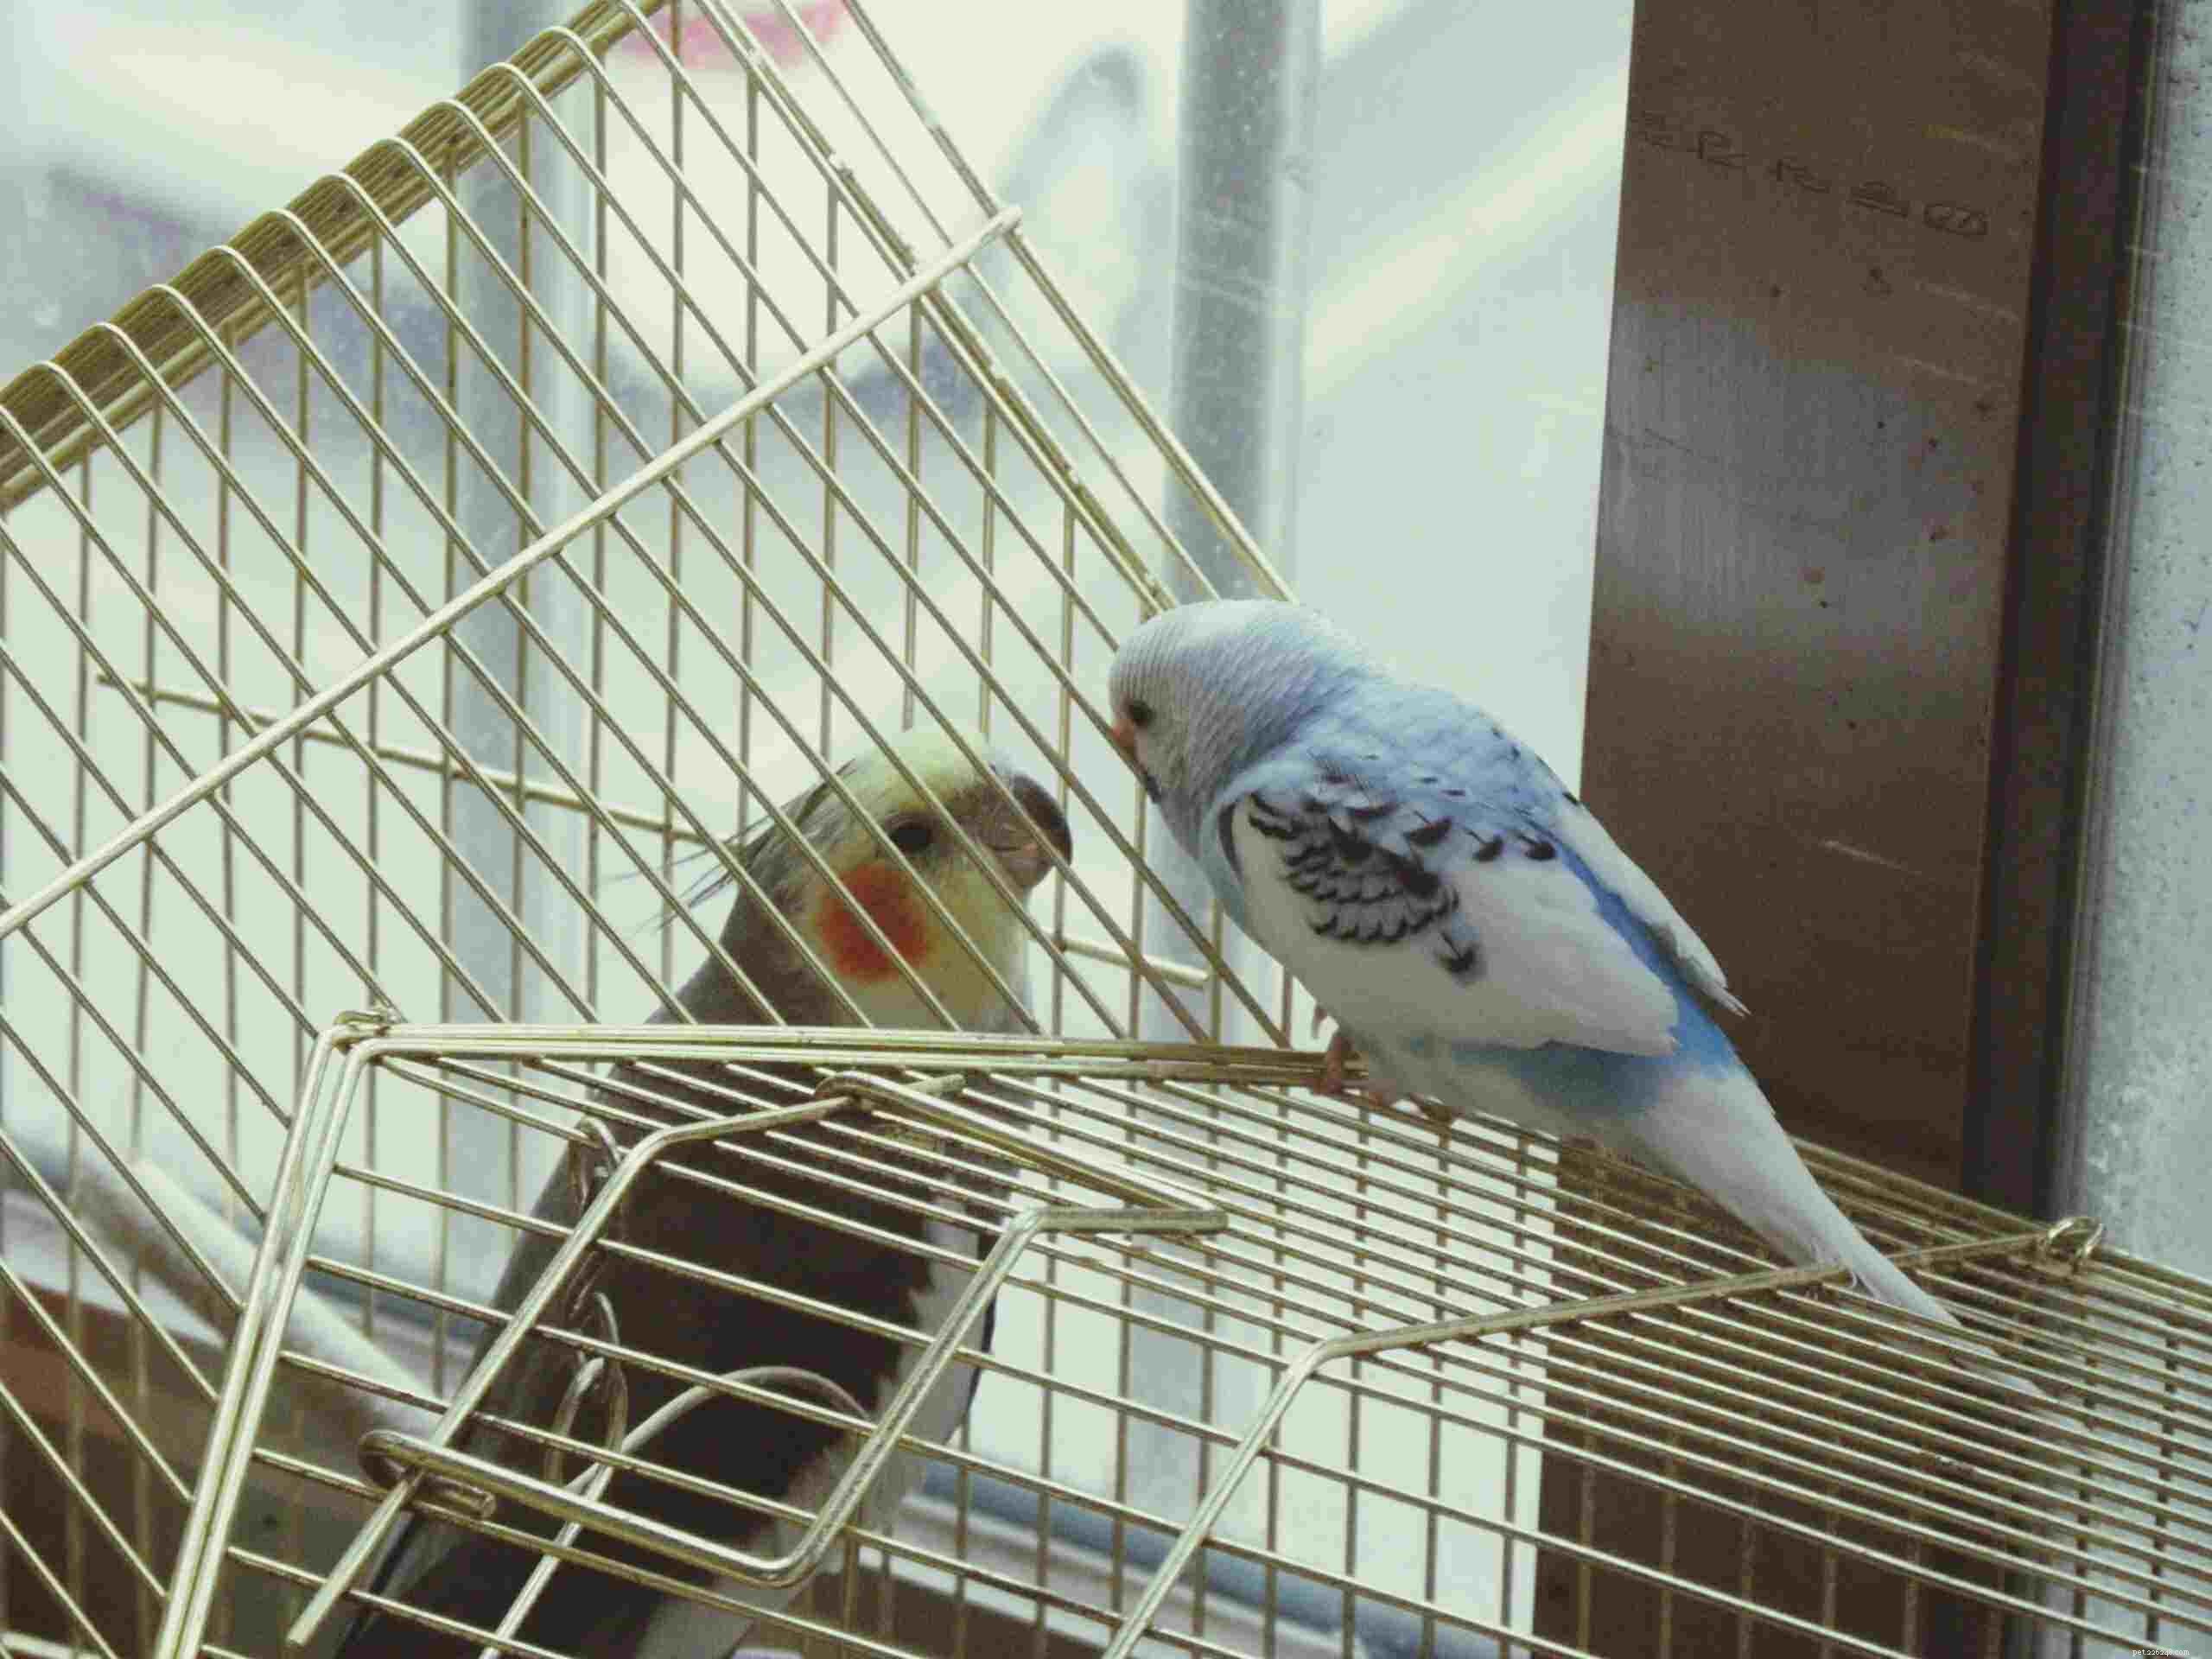 Presentazione di un nuovo uccello al tuo pappagallo